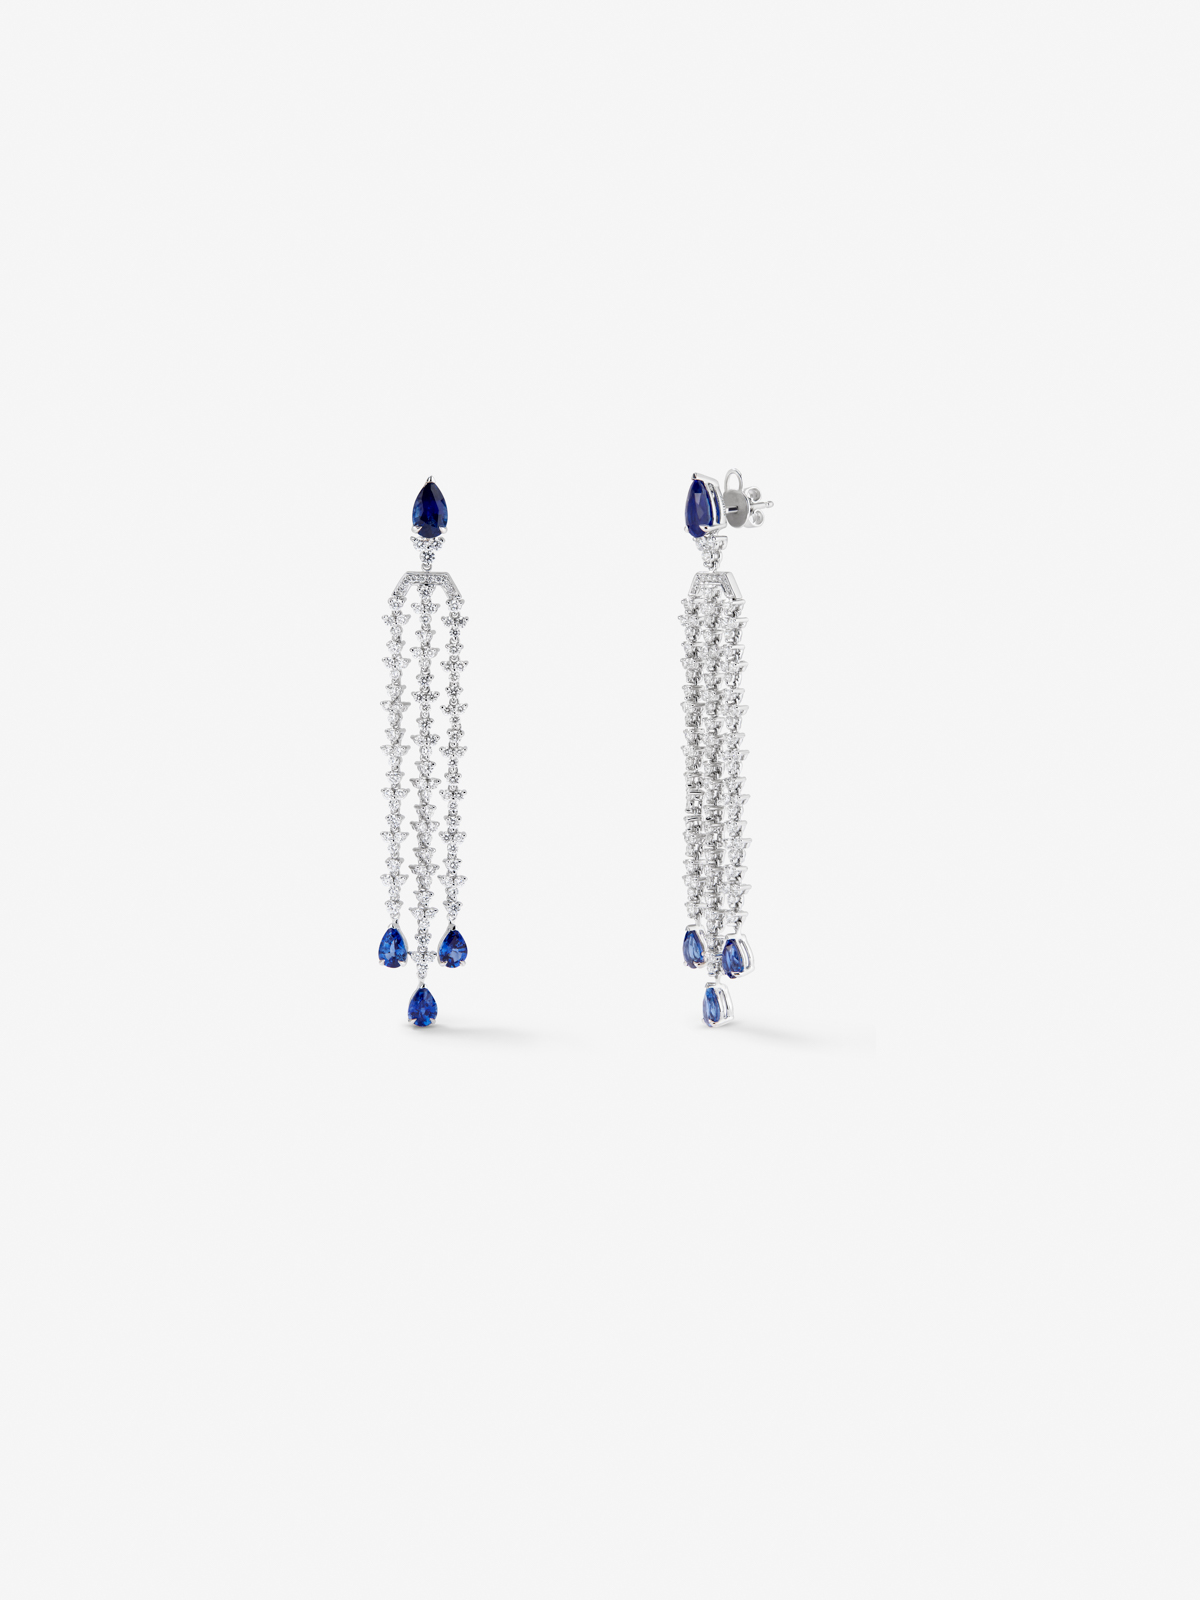 Pendientes de oro blanco de 18K con zafiros azul royal en talla pera de 5,61 cts y diamantes blancos en talla brillante de 3,44 cts